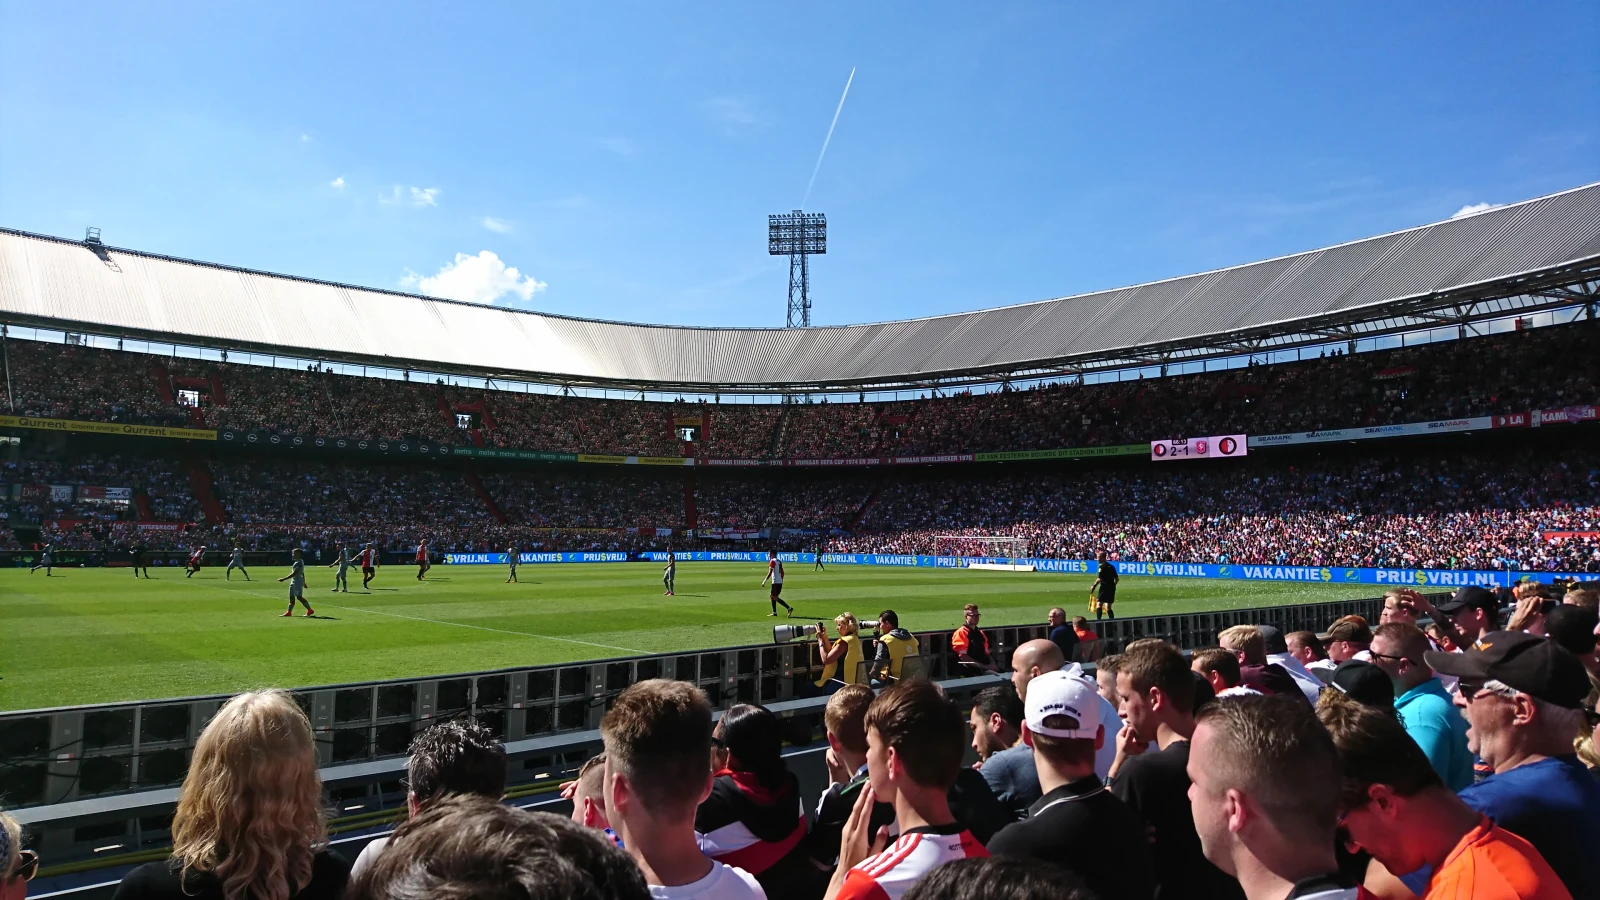 LIVE | Feyenoord - Southampton FC 1-3 | Einde wedstrijd